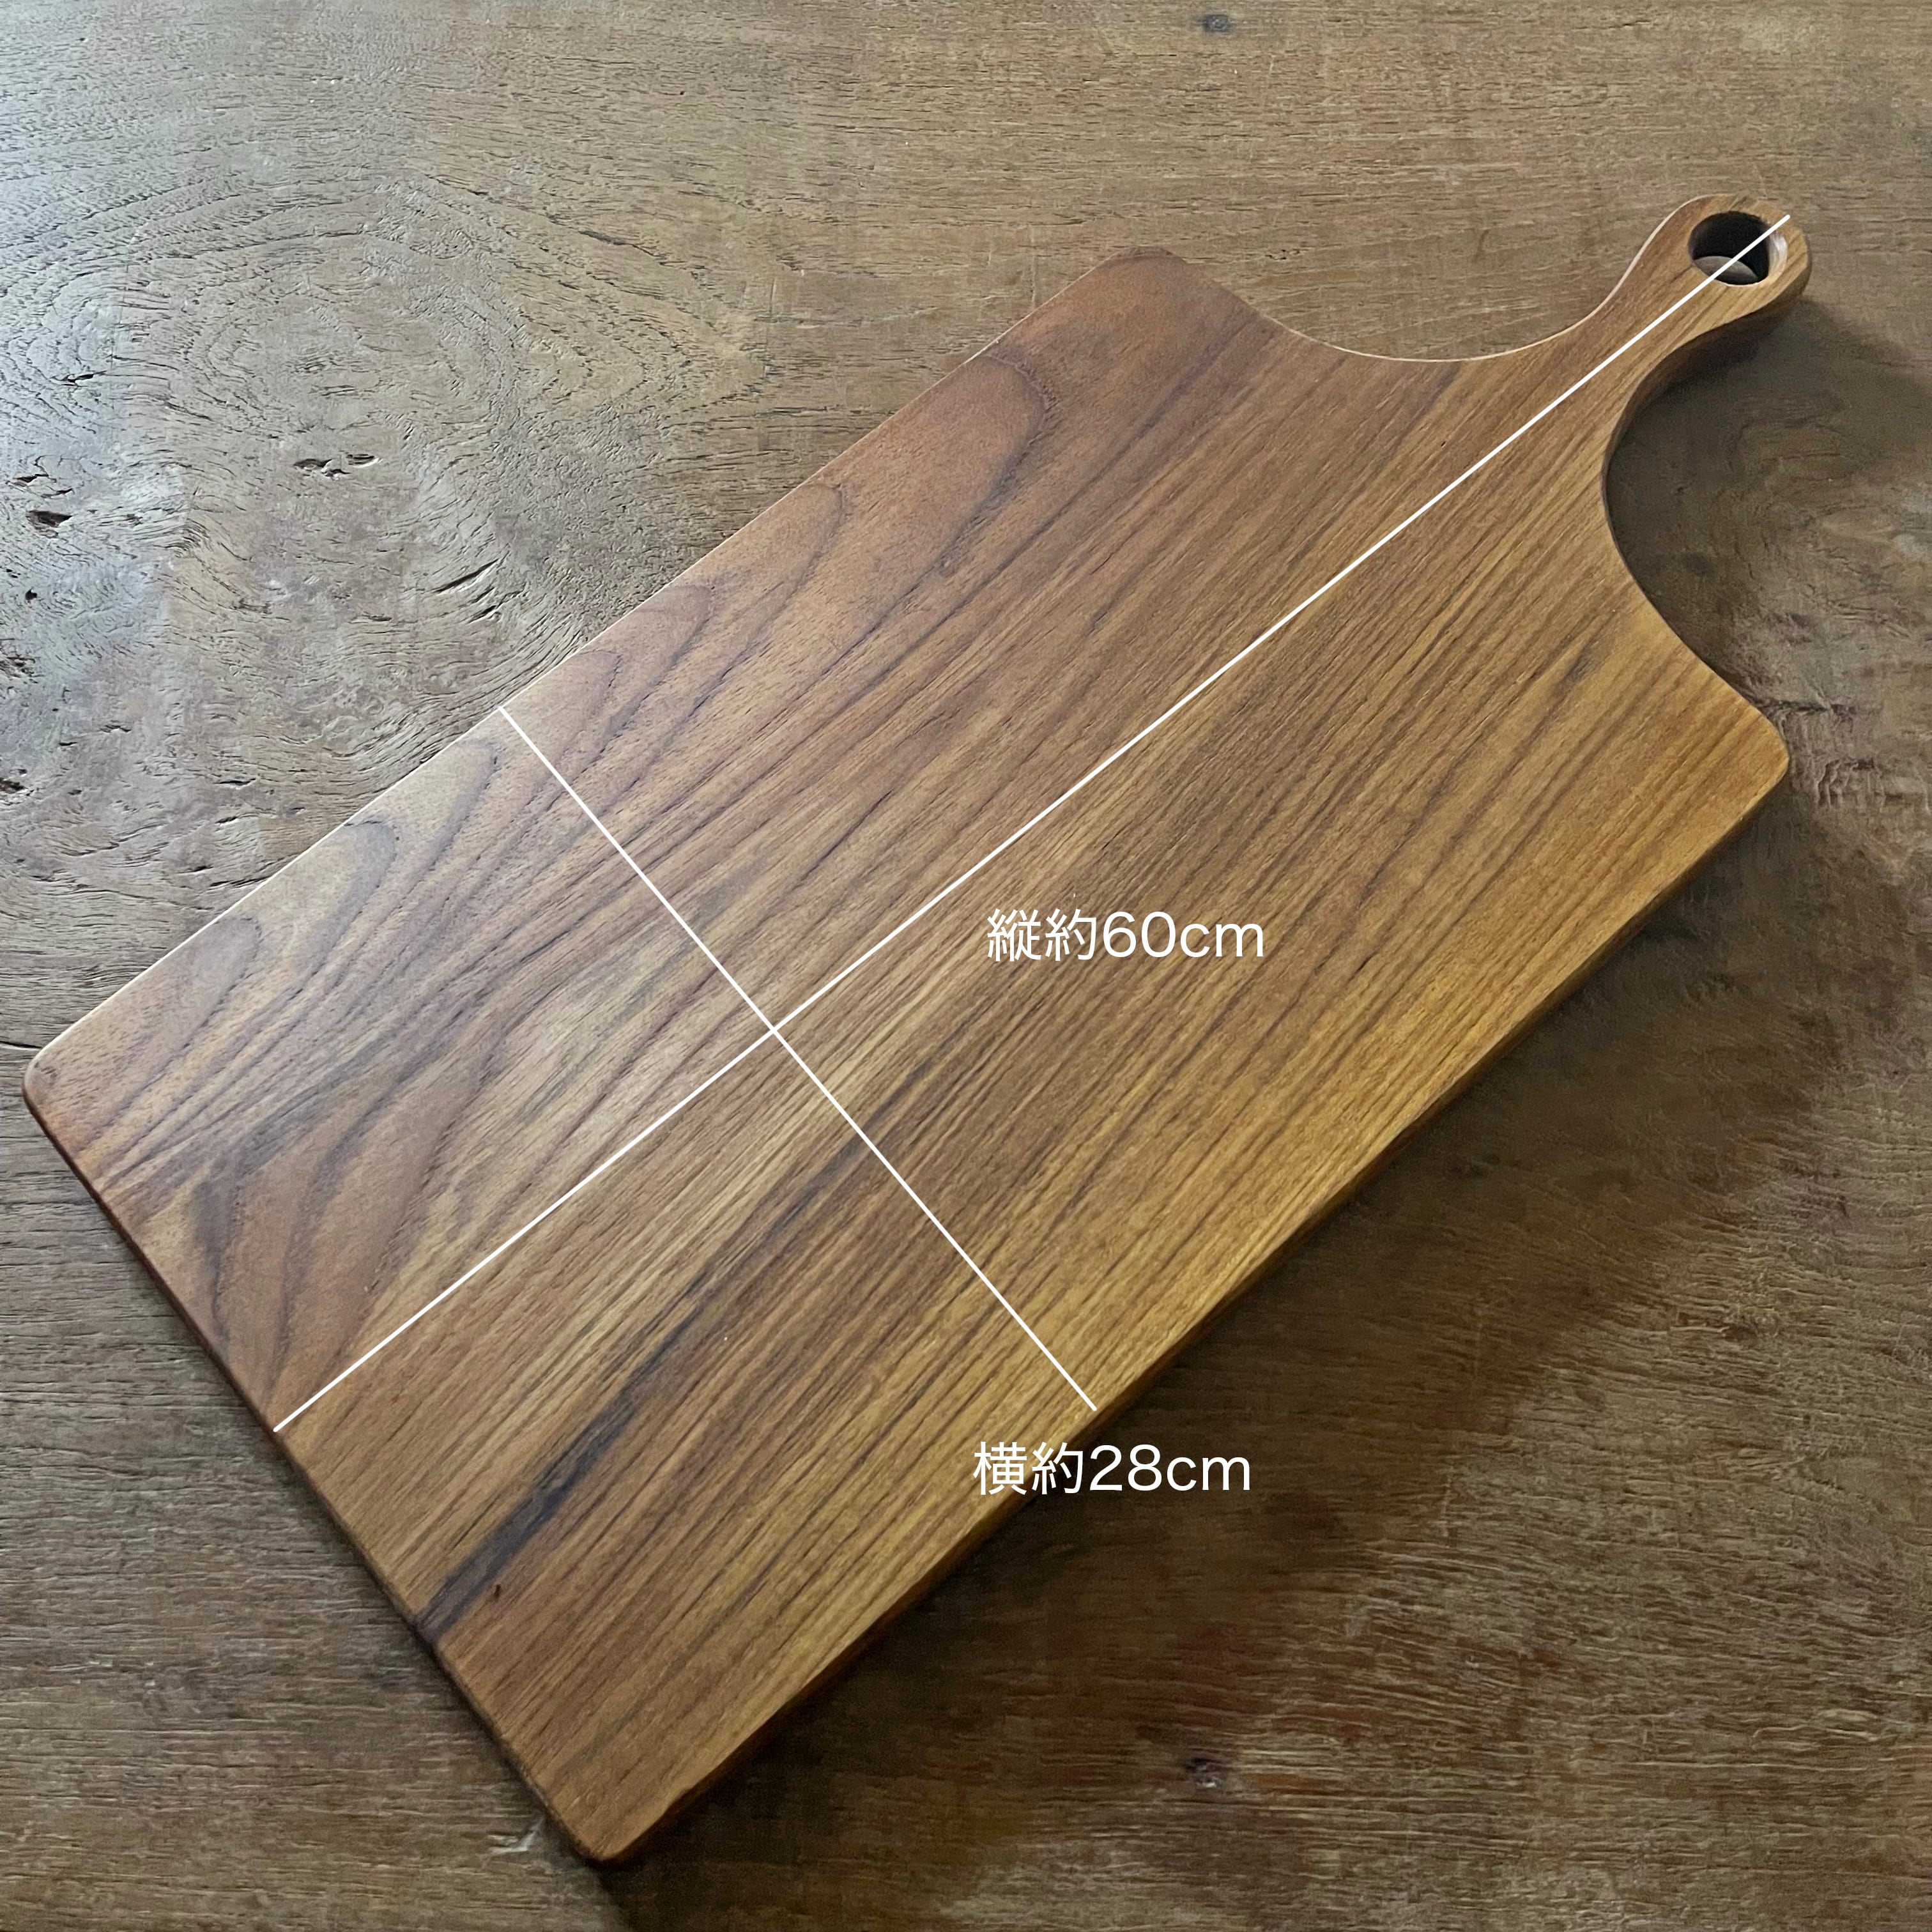 木製カッティングボード/チーク XL(約60cm x 28cm x 1.5cm) Paddle(パドル)